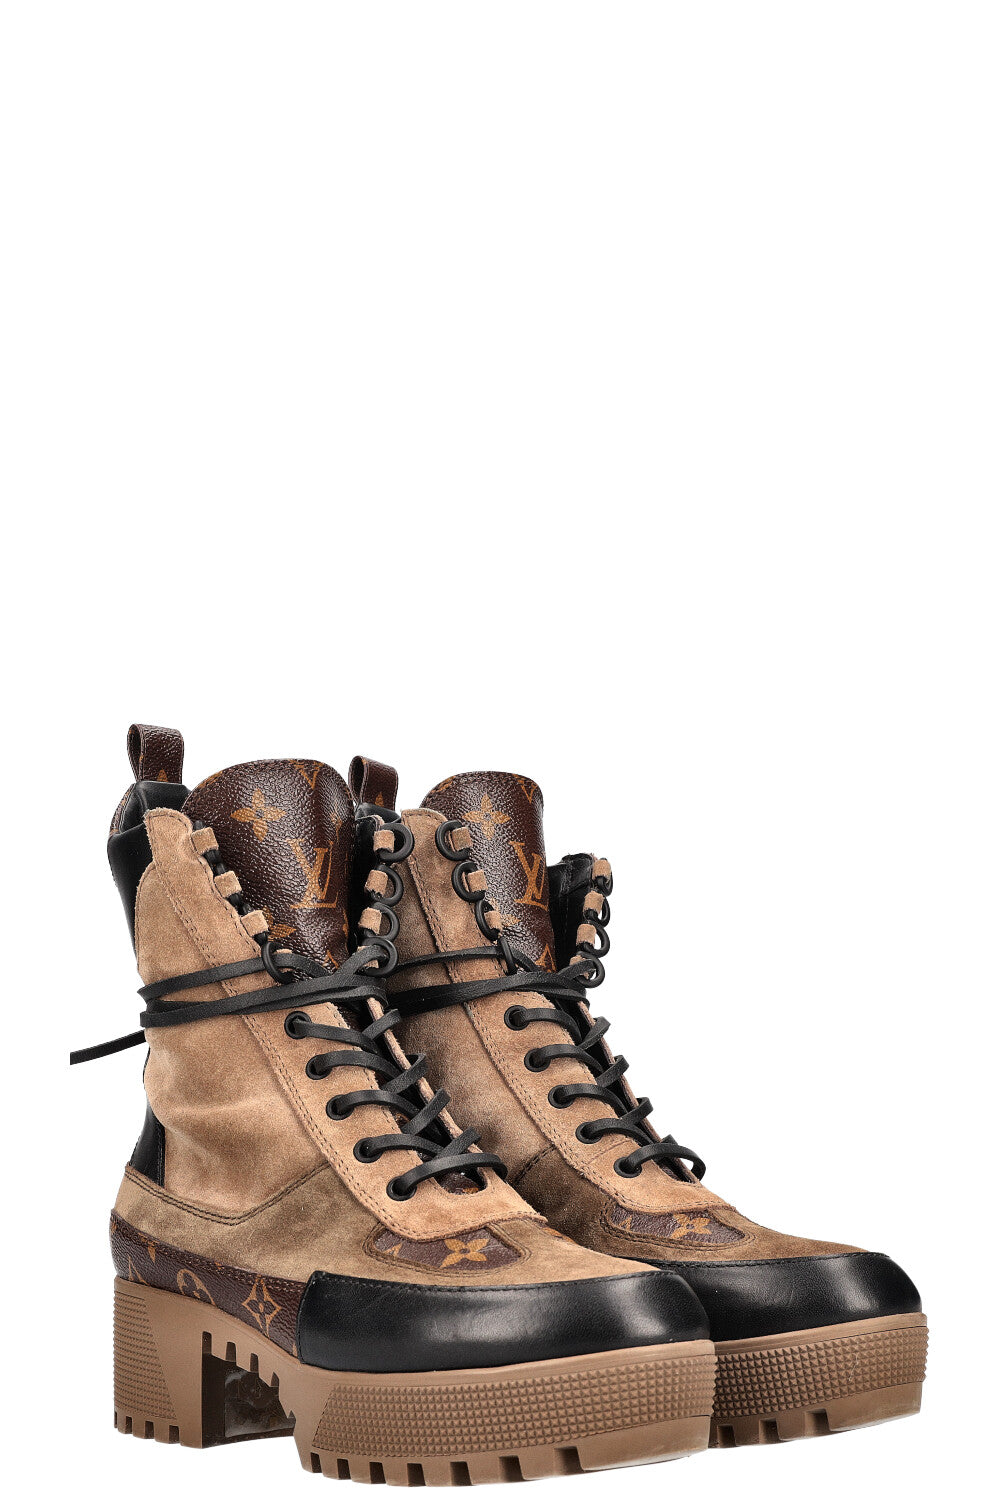 NWB Louis Vuitton Laureate Black Monogram Platform Desert Boots (Size 38)  NEW!